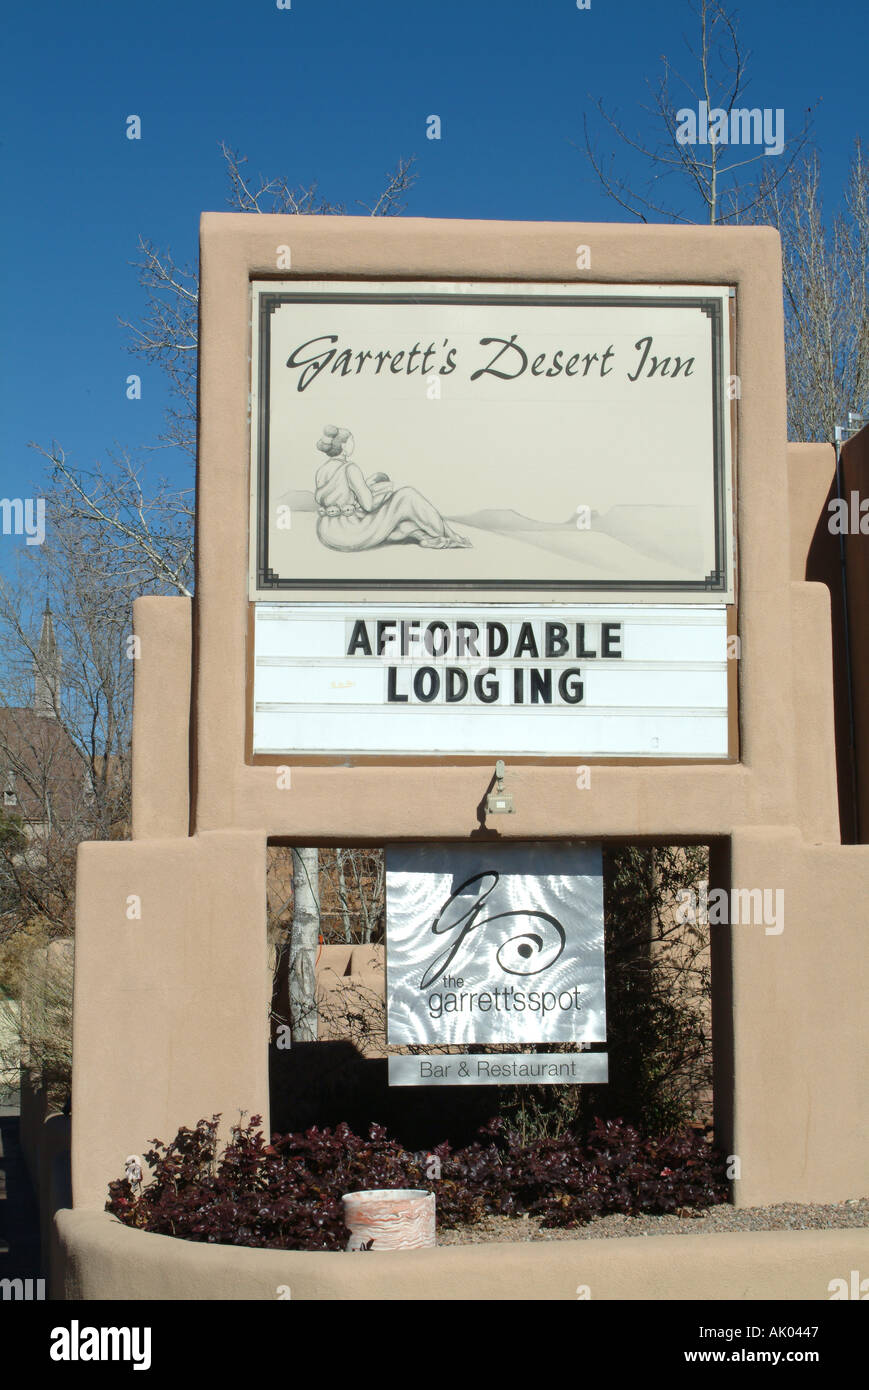 Sign for Garretts Desert Inn at Santa Fe New Mexico Stock Photo